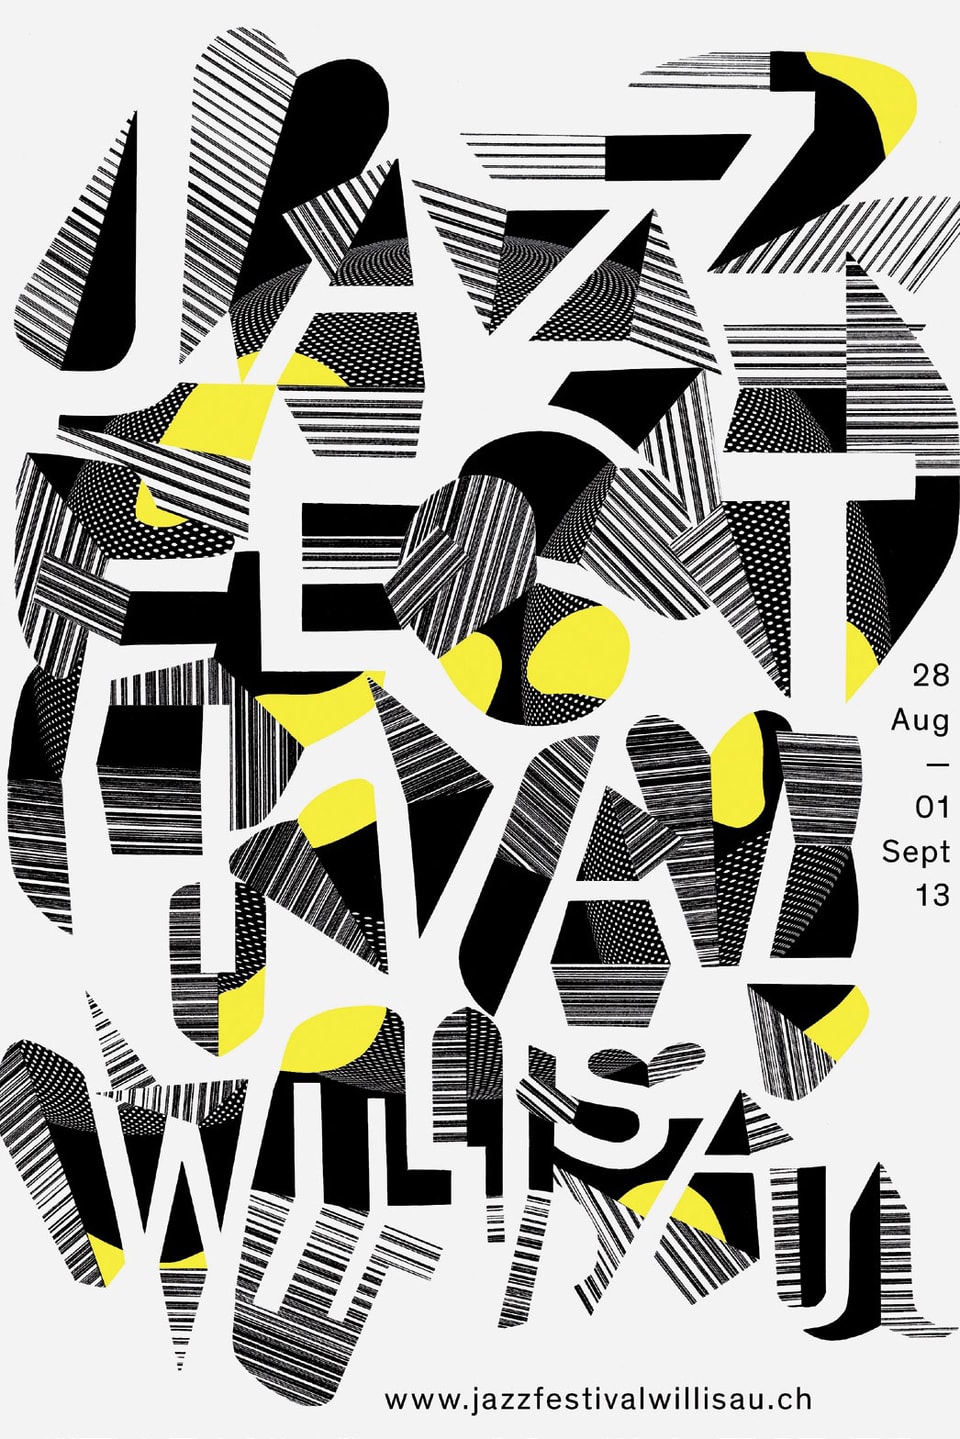 Auf dem Plakat von 2013 wird der Name "Jazzfestival Willisau" auf schwarz/weiss/gelben Flächen sichtbar.